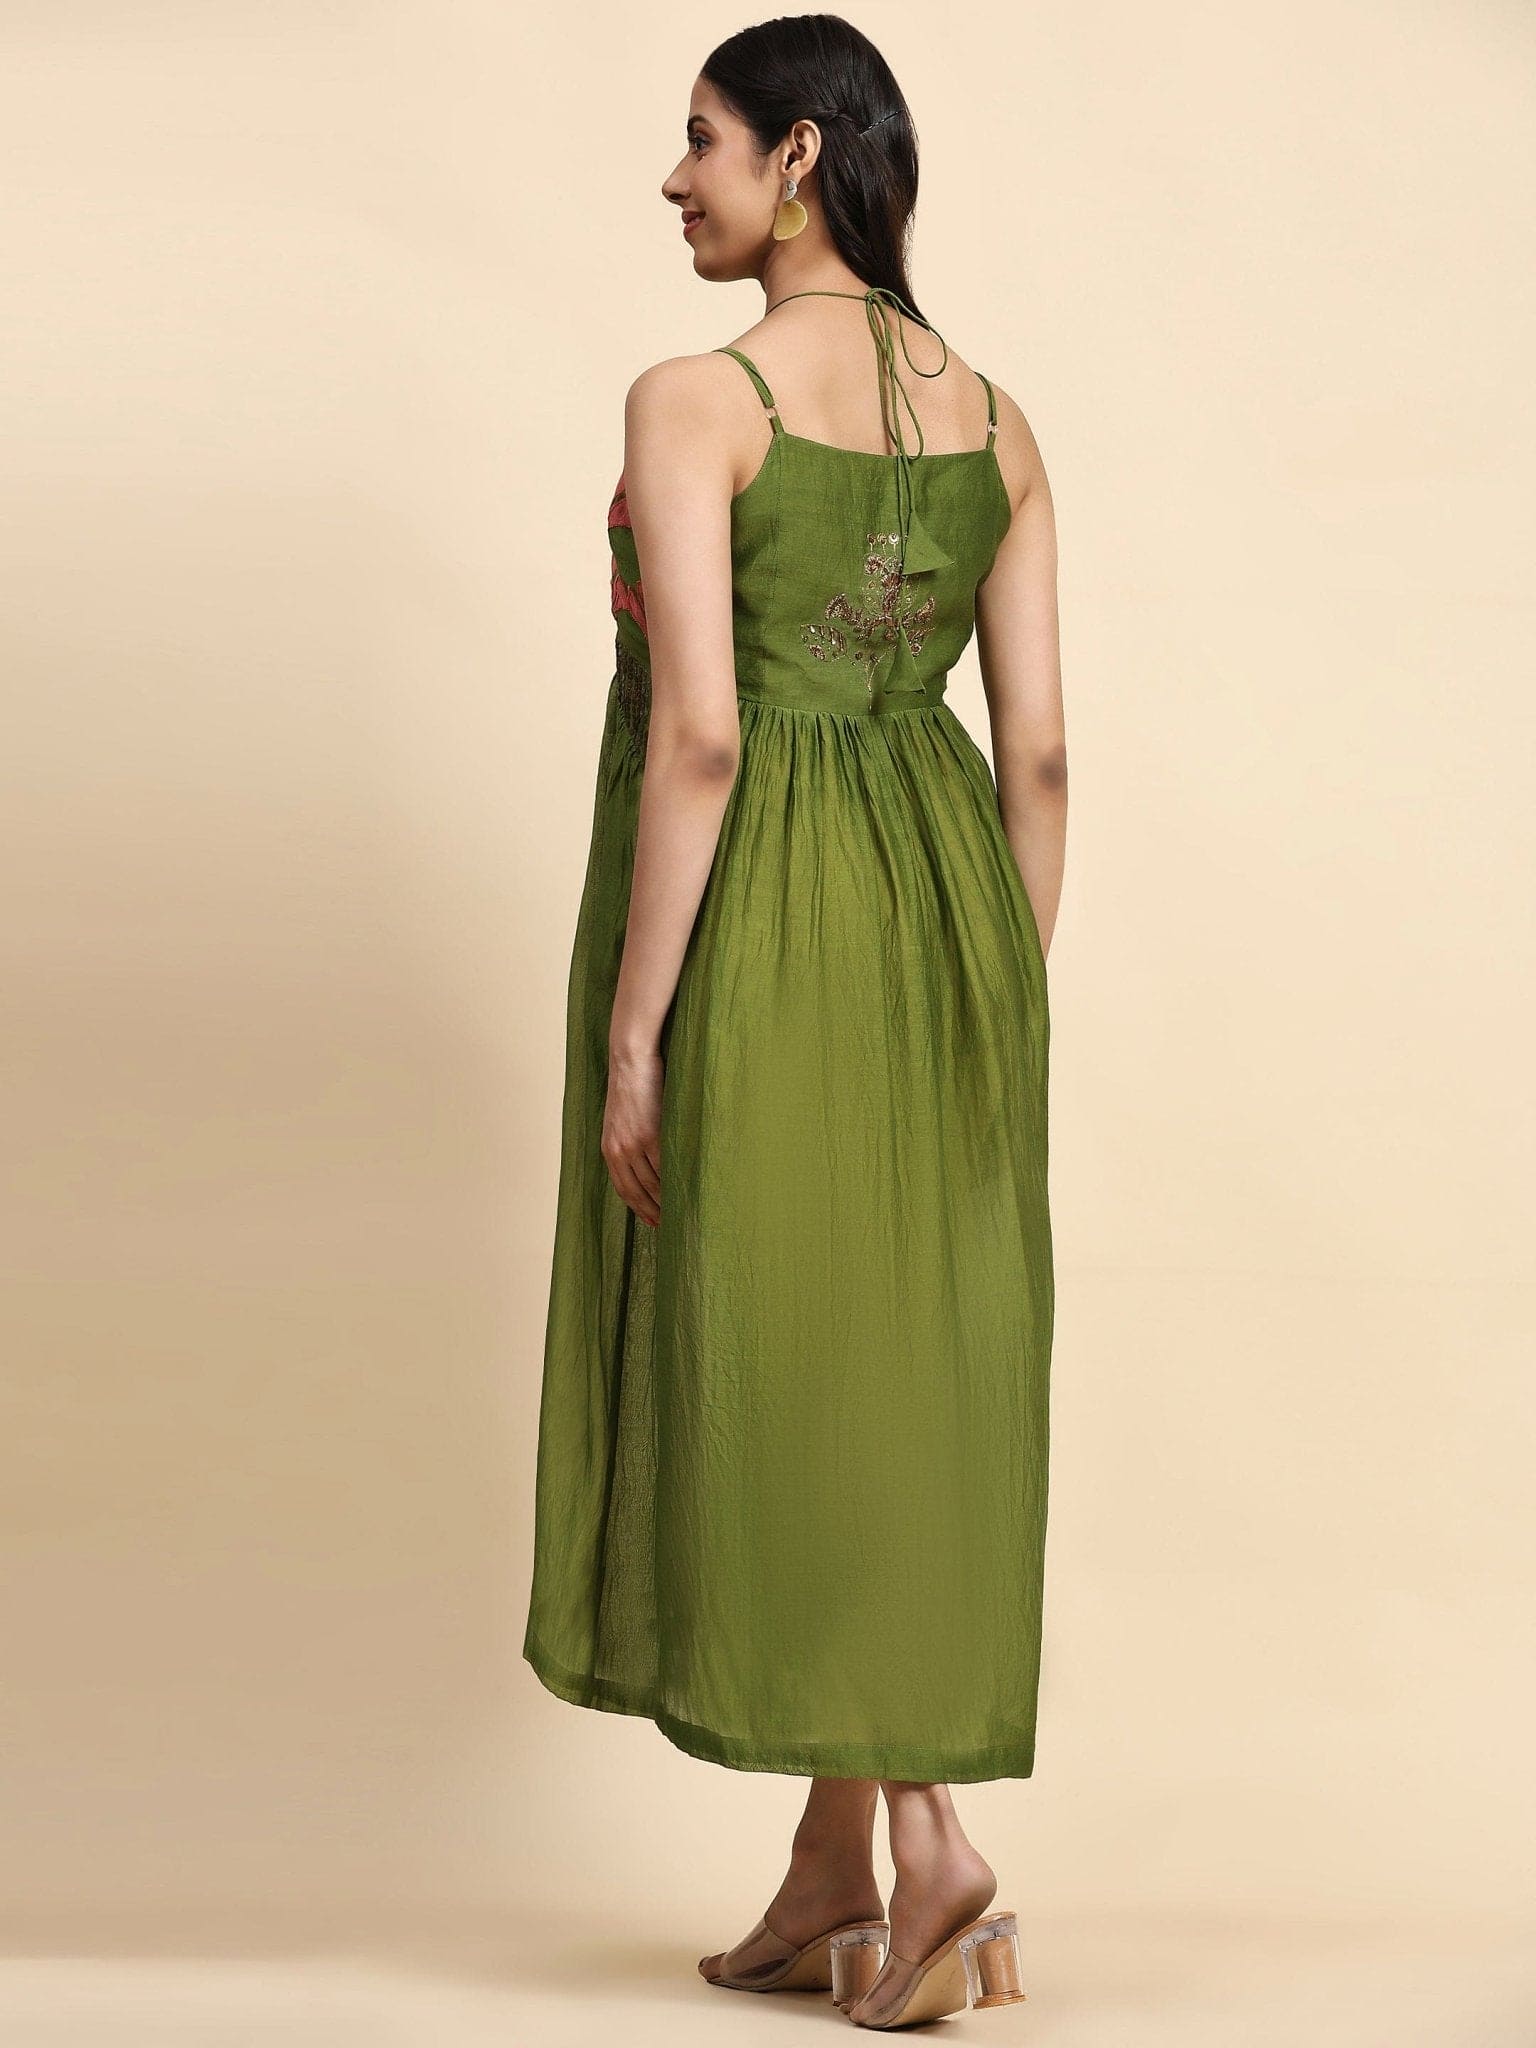 Green Patch Work With Zardozi Pure Silk Dress - Charkha TalesGreen Patch Work With Zardozi Pure Silk Dress